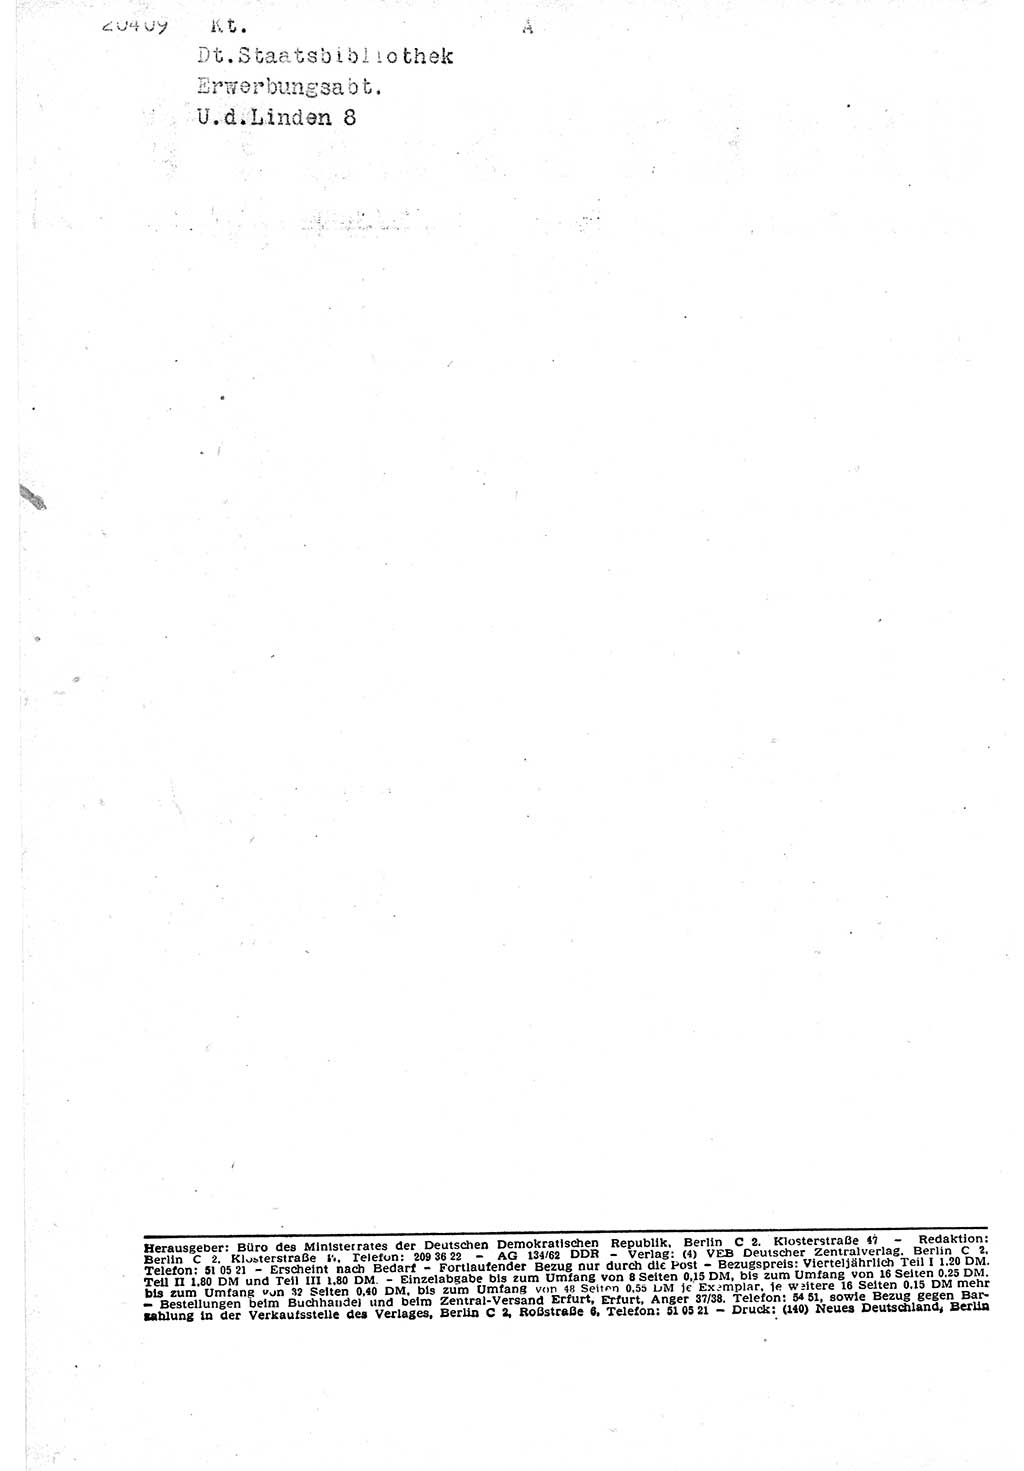 Gesetzblatt (GBl.) der Deutschen Demokratischen Republik (DDR) Teil Ⅰ 1962, Seite 90 (GBl. DDR Ⅰ 1962, S. 90)